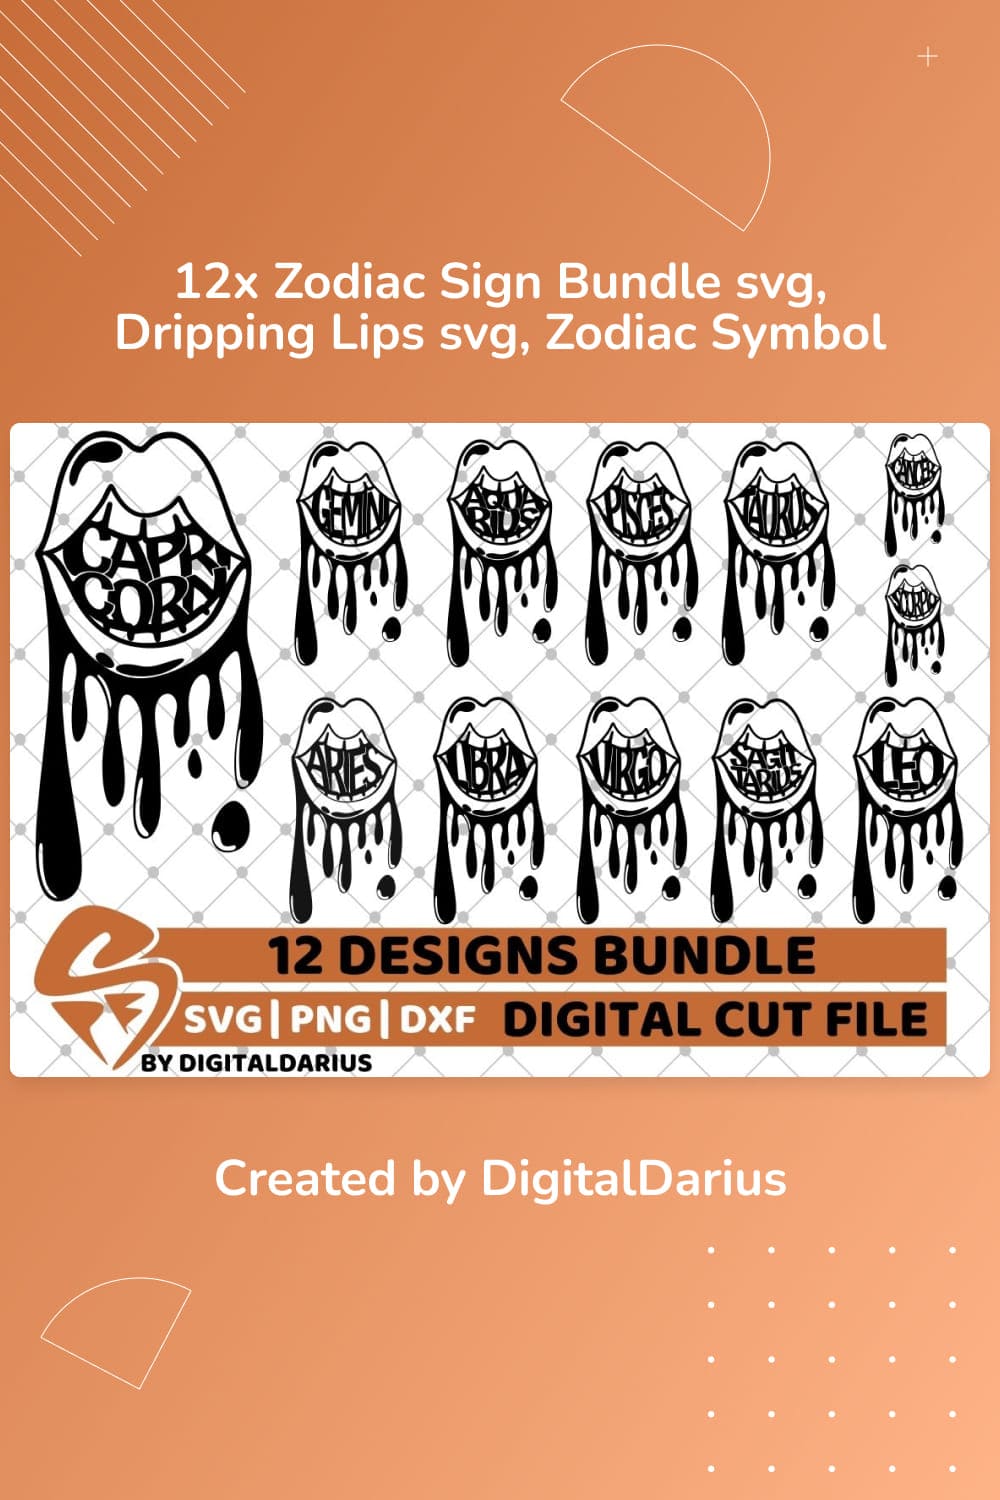  Zodiac Sign Bundle SVG.